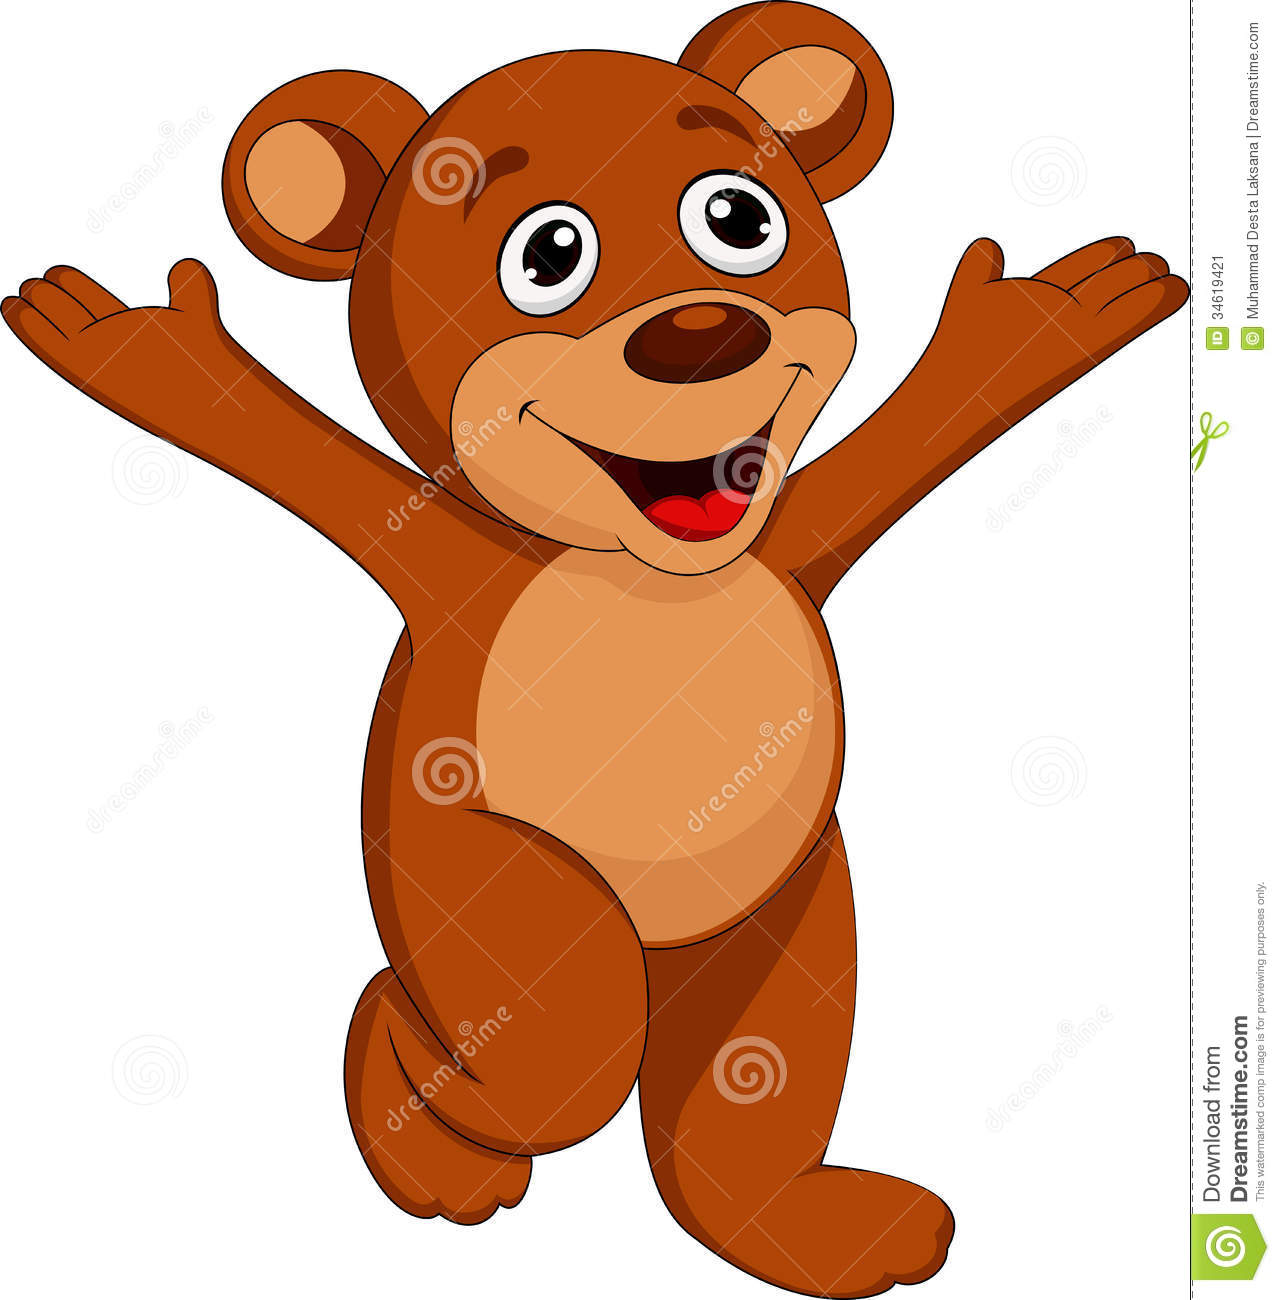 Happy Bear Cartoon Stock Image   Image  34619421